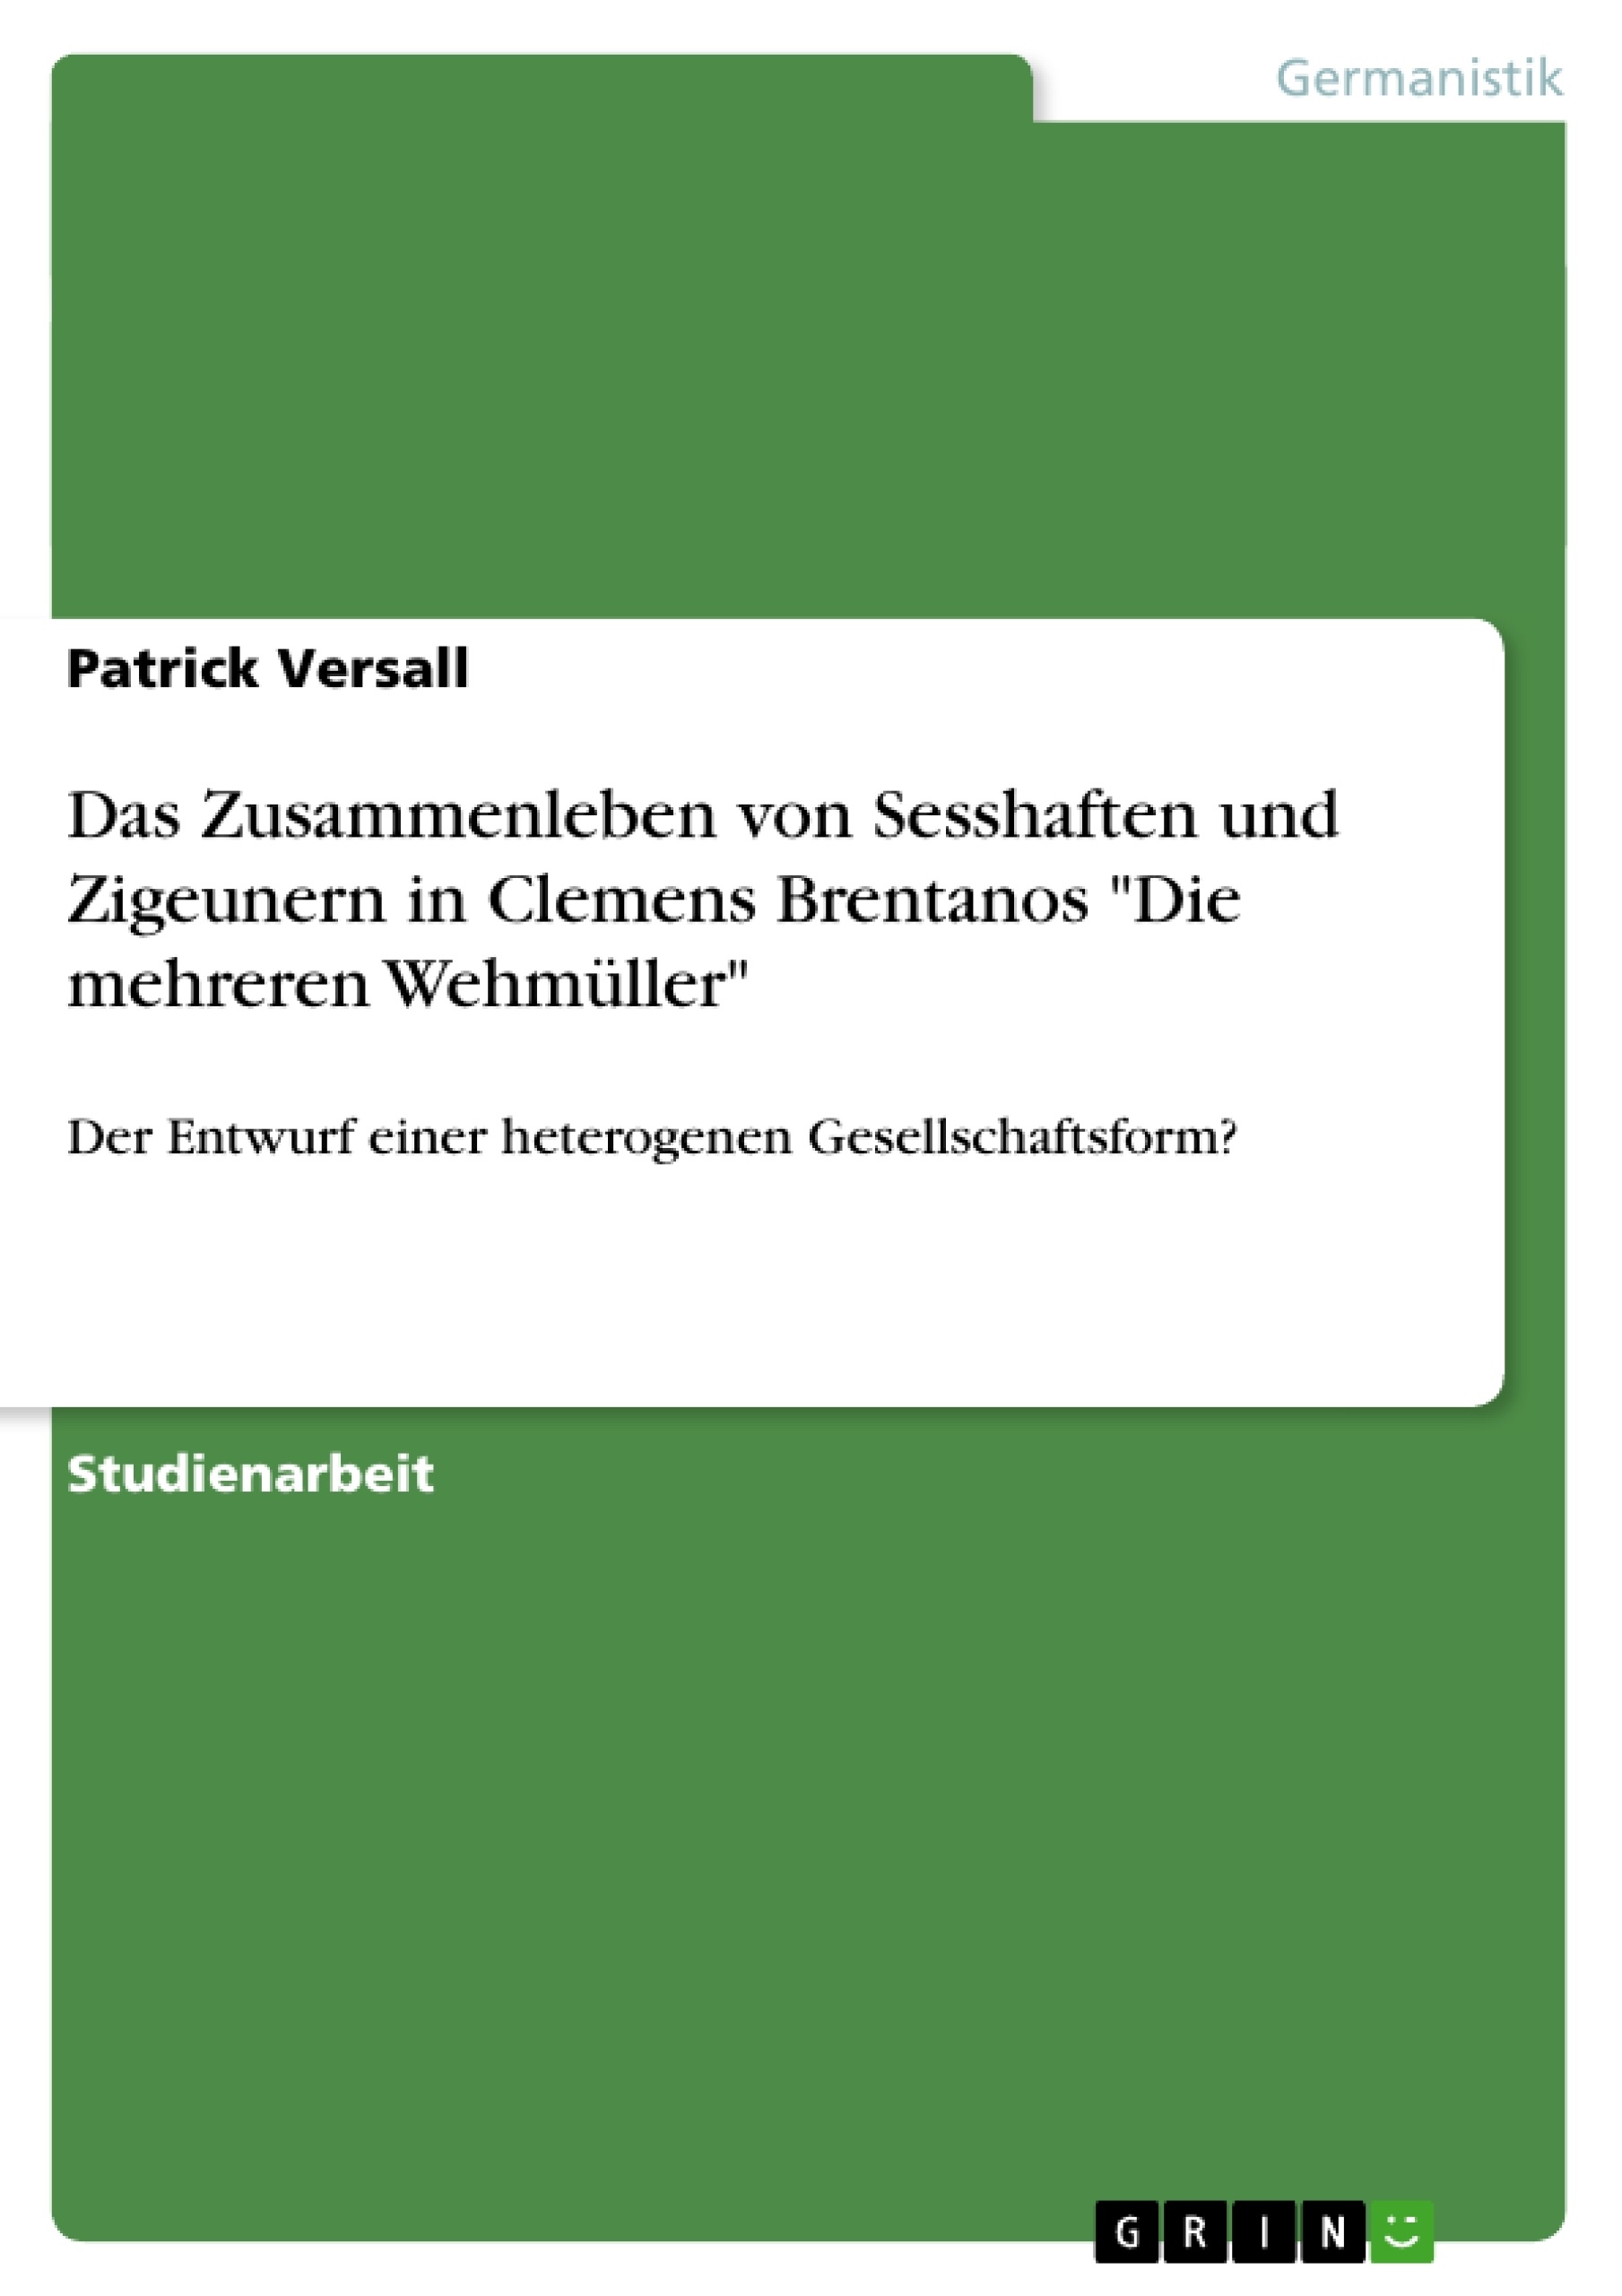 Titel: Das Zusammenleben von Sesshaften und Zigeunern in Clemens Brentanos "Die mehreren Wehmüller"